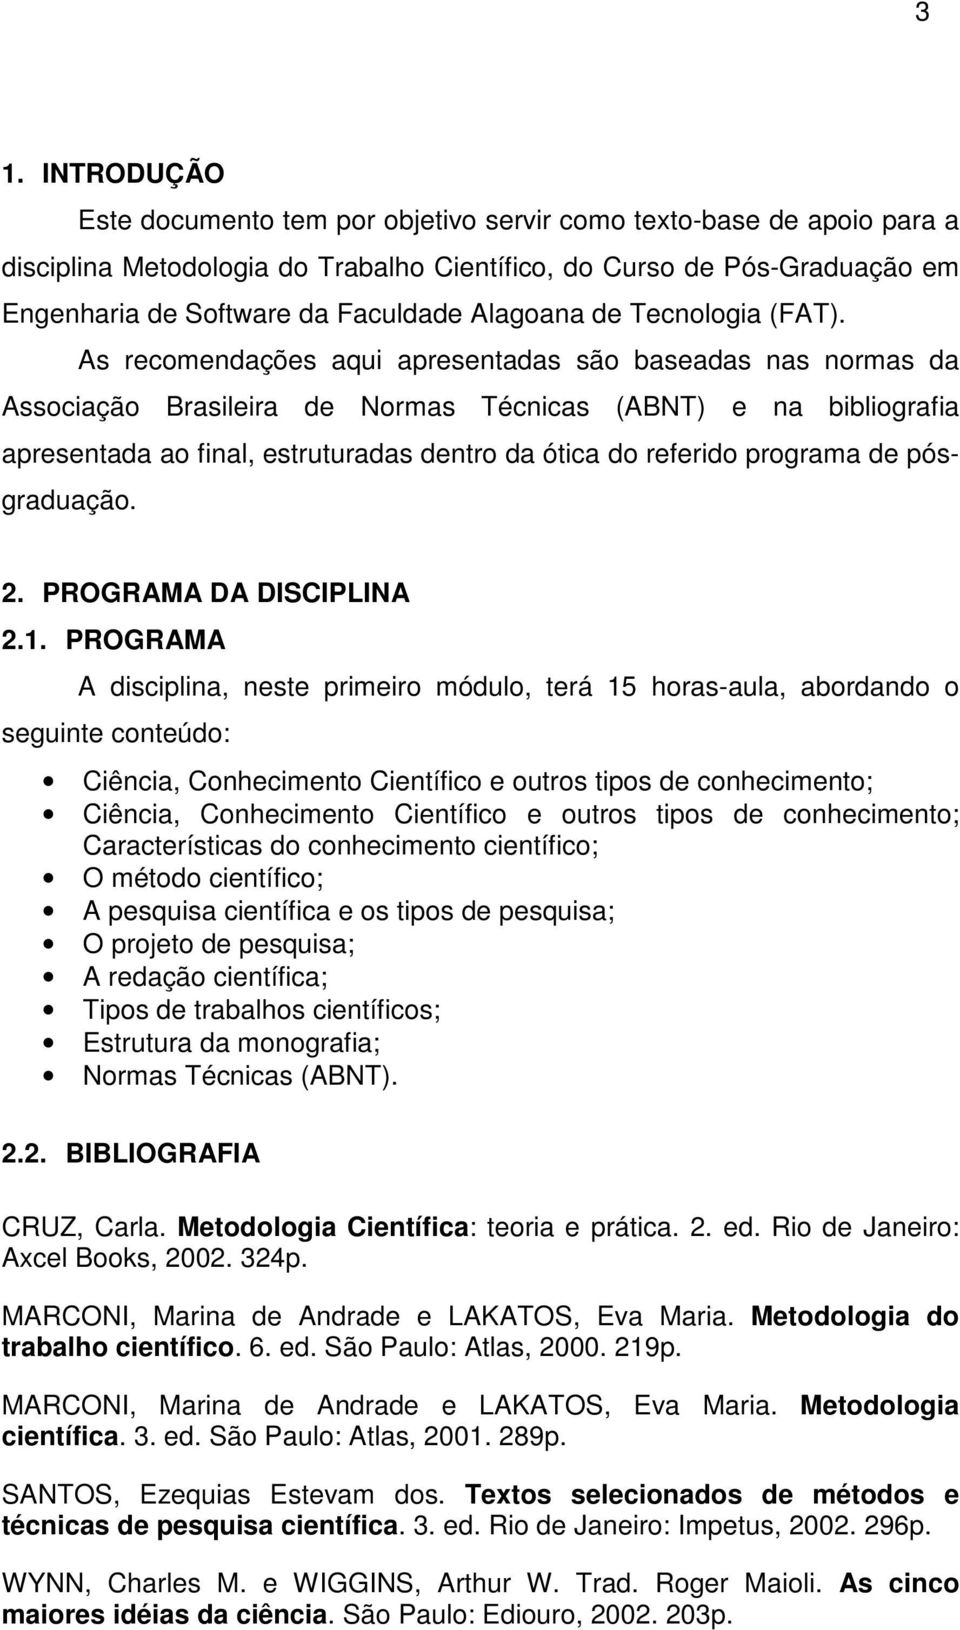 As recomendações aqui apresentadas são baseadas nas normas da Associação Brasileira de Normas Técnicas (ABNT) e na bibliografia apresentada ao final, estruturadas dentro da ótica do referido programa